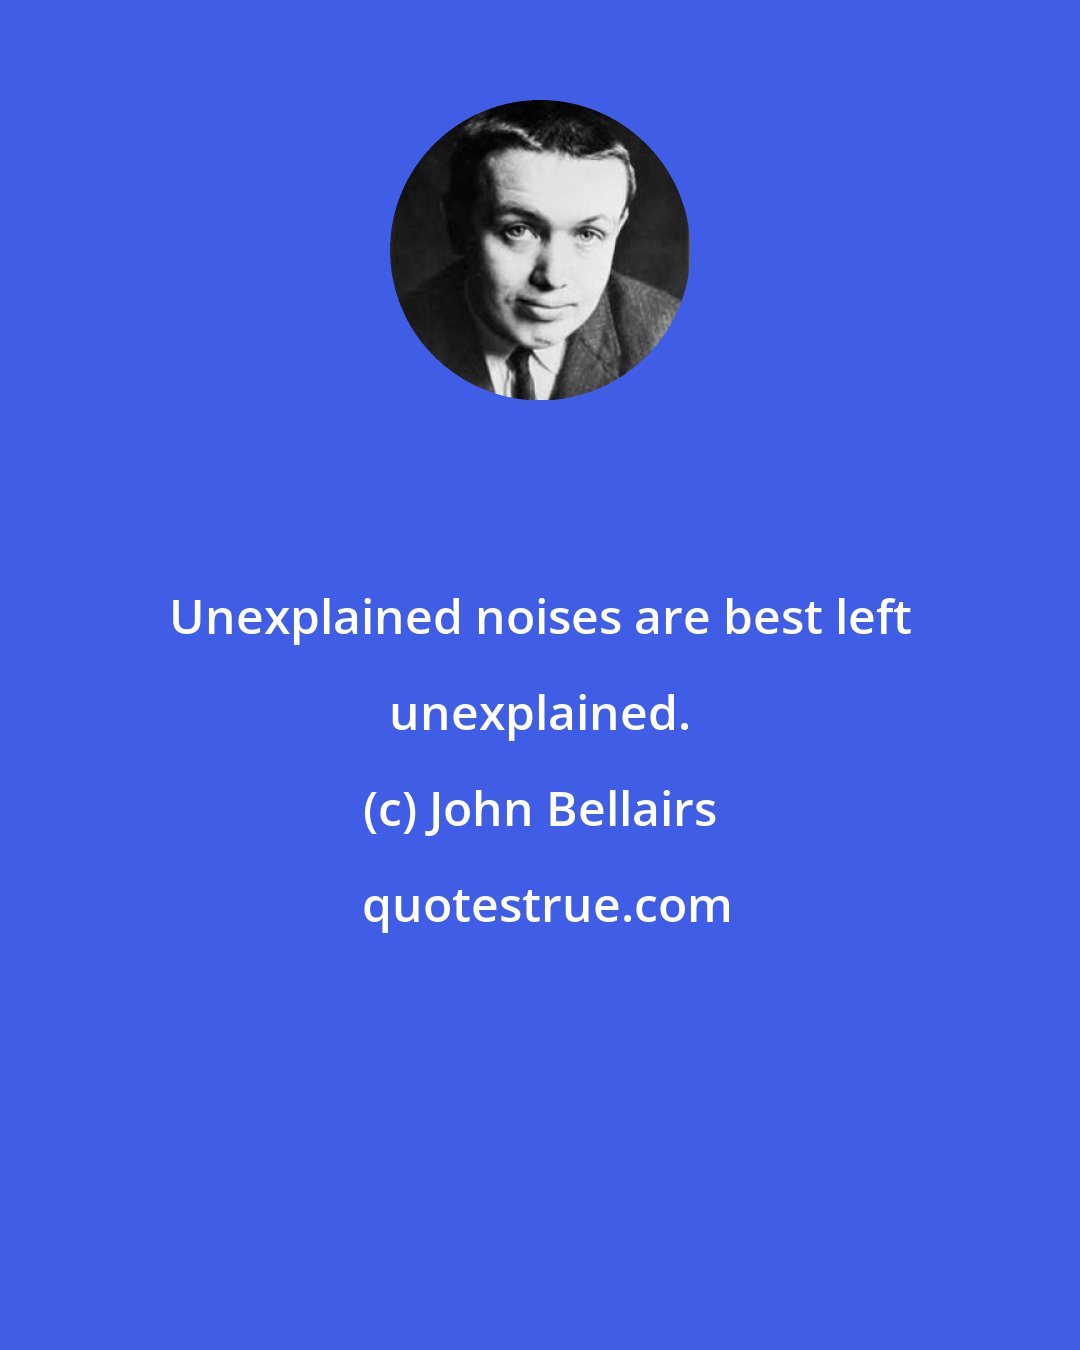 John Bellairs: Unexplained noises are best left unexplained.